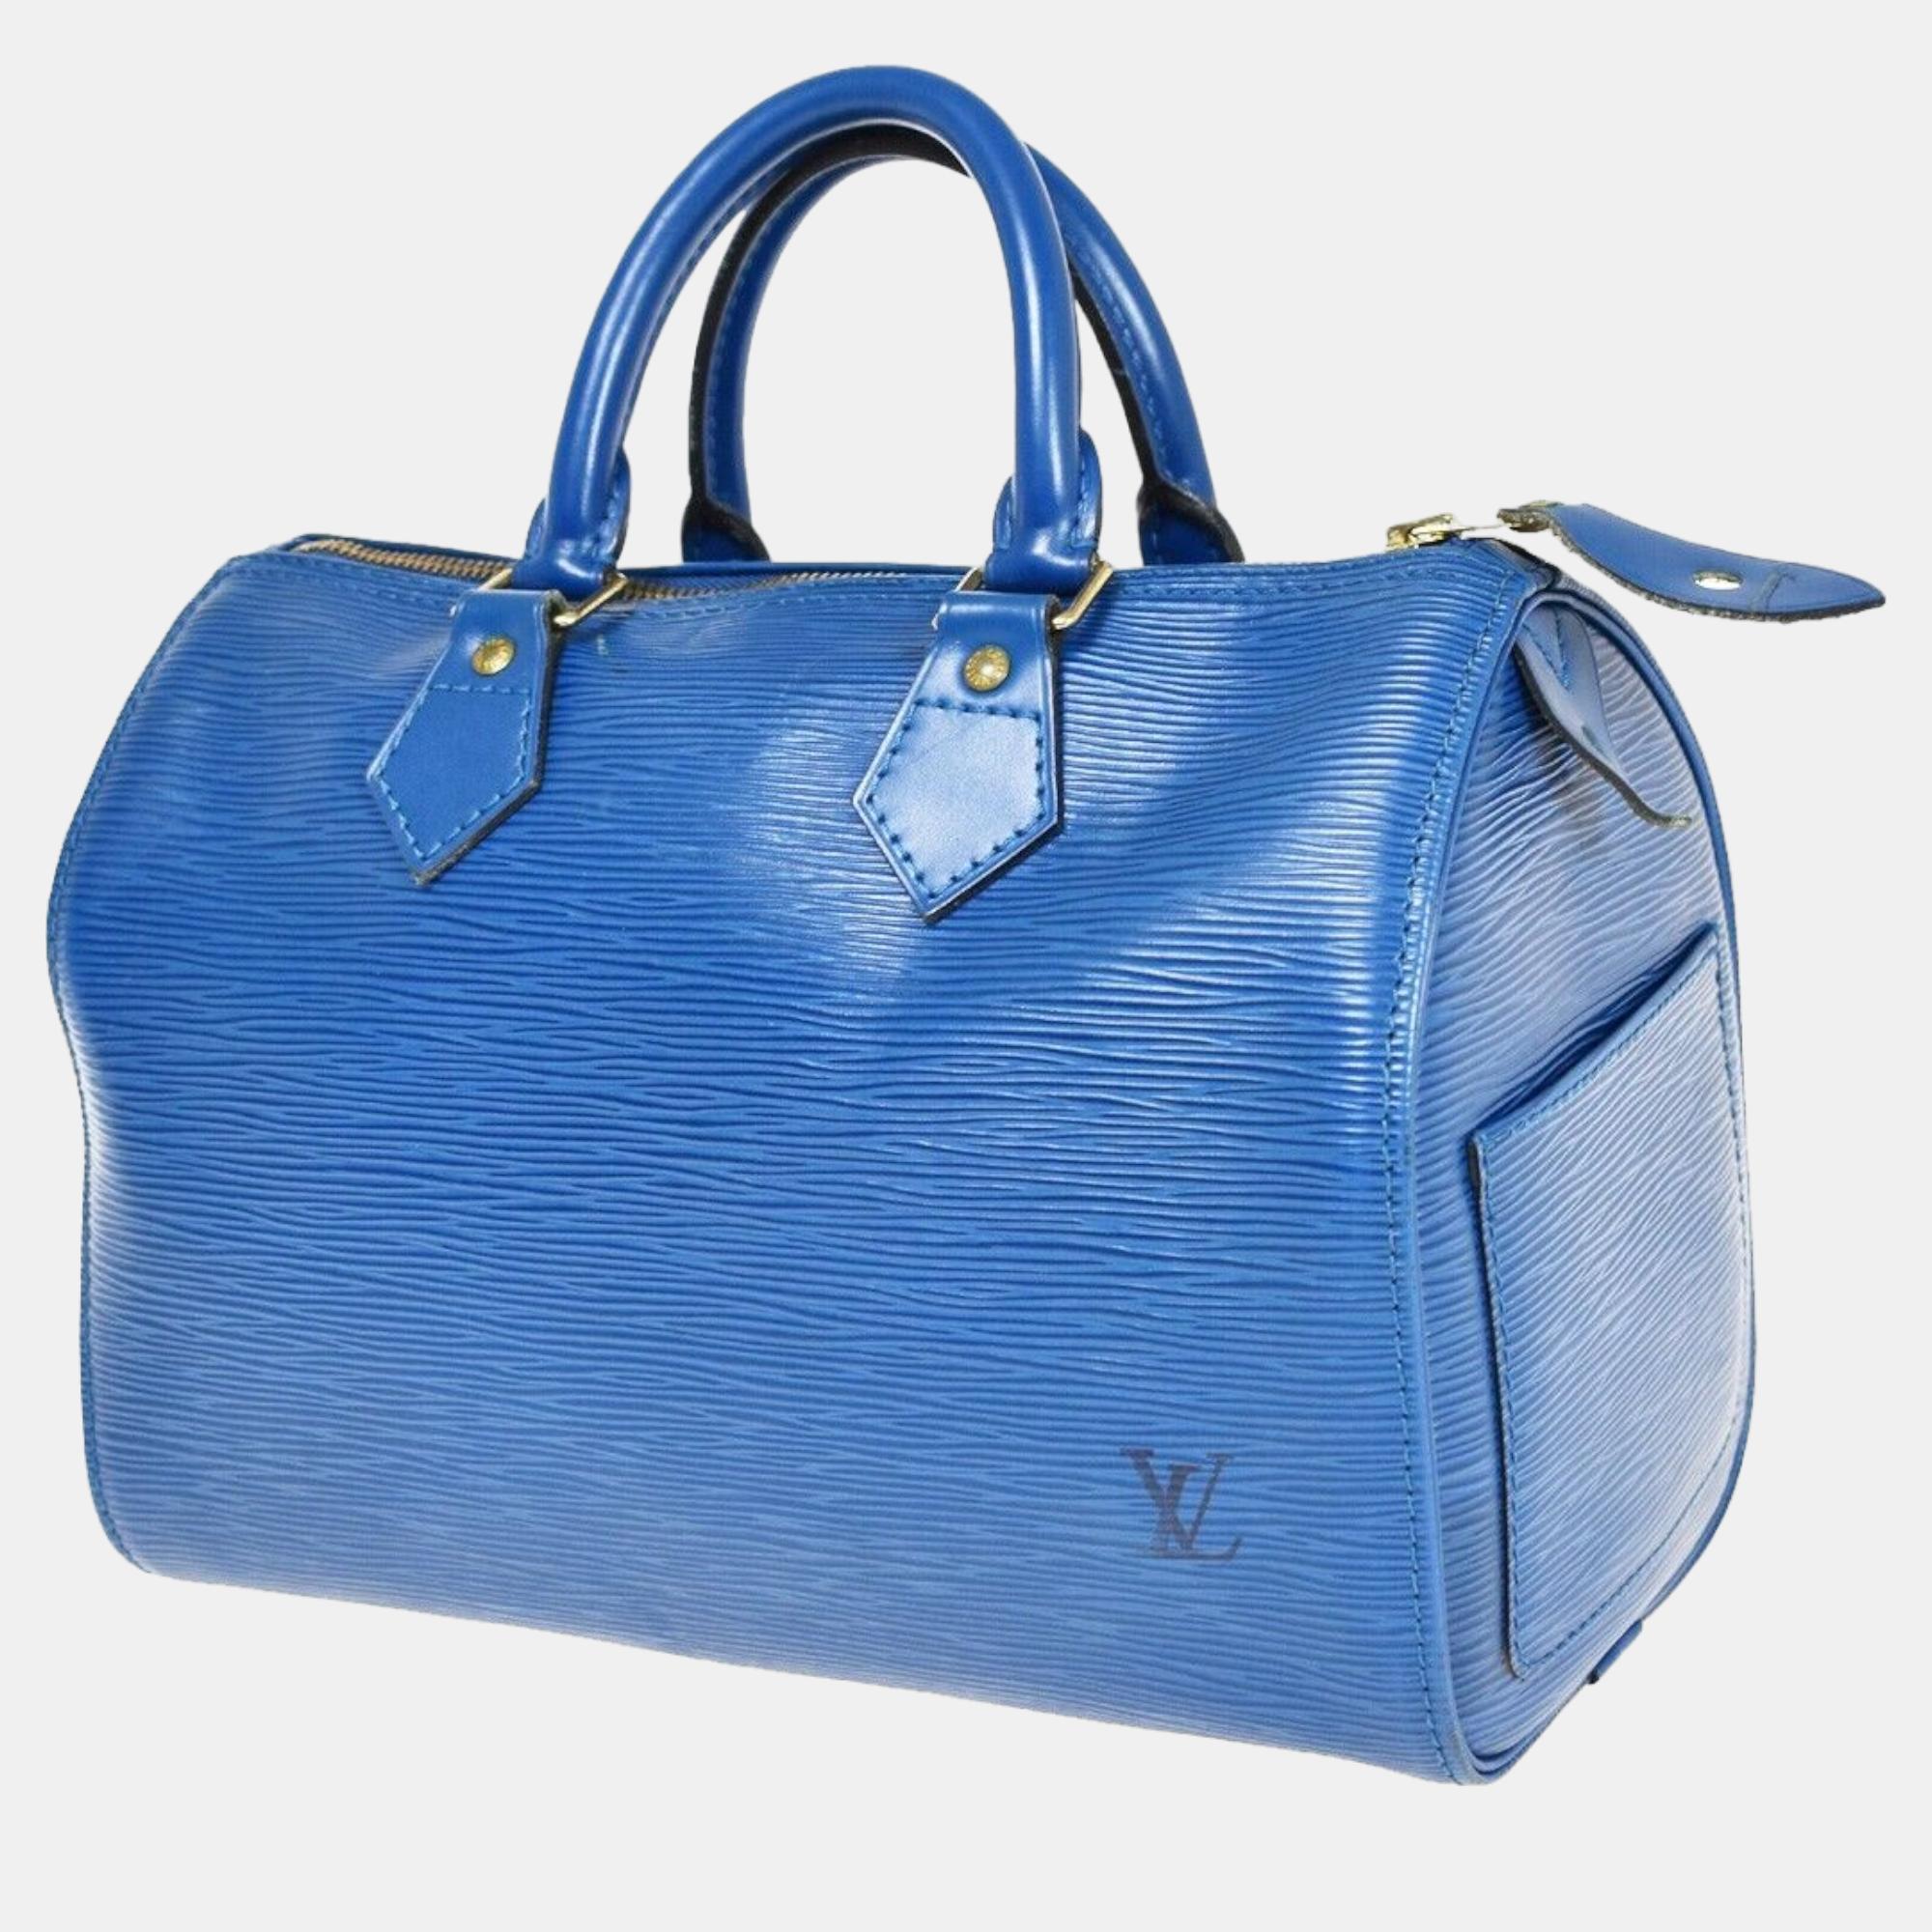 

Louis Vuitton Blue Epi Leather Speedy bag